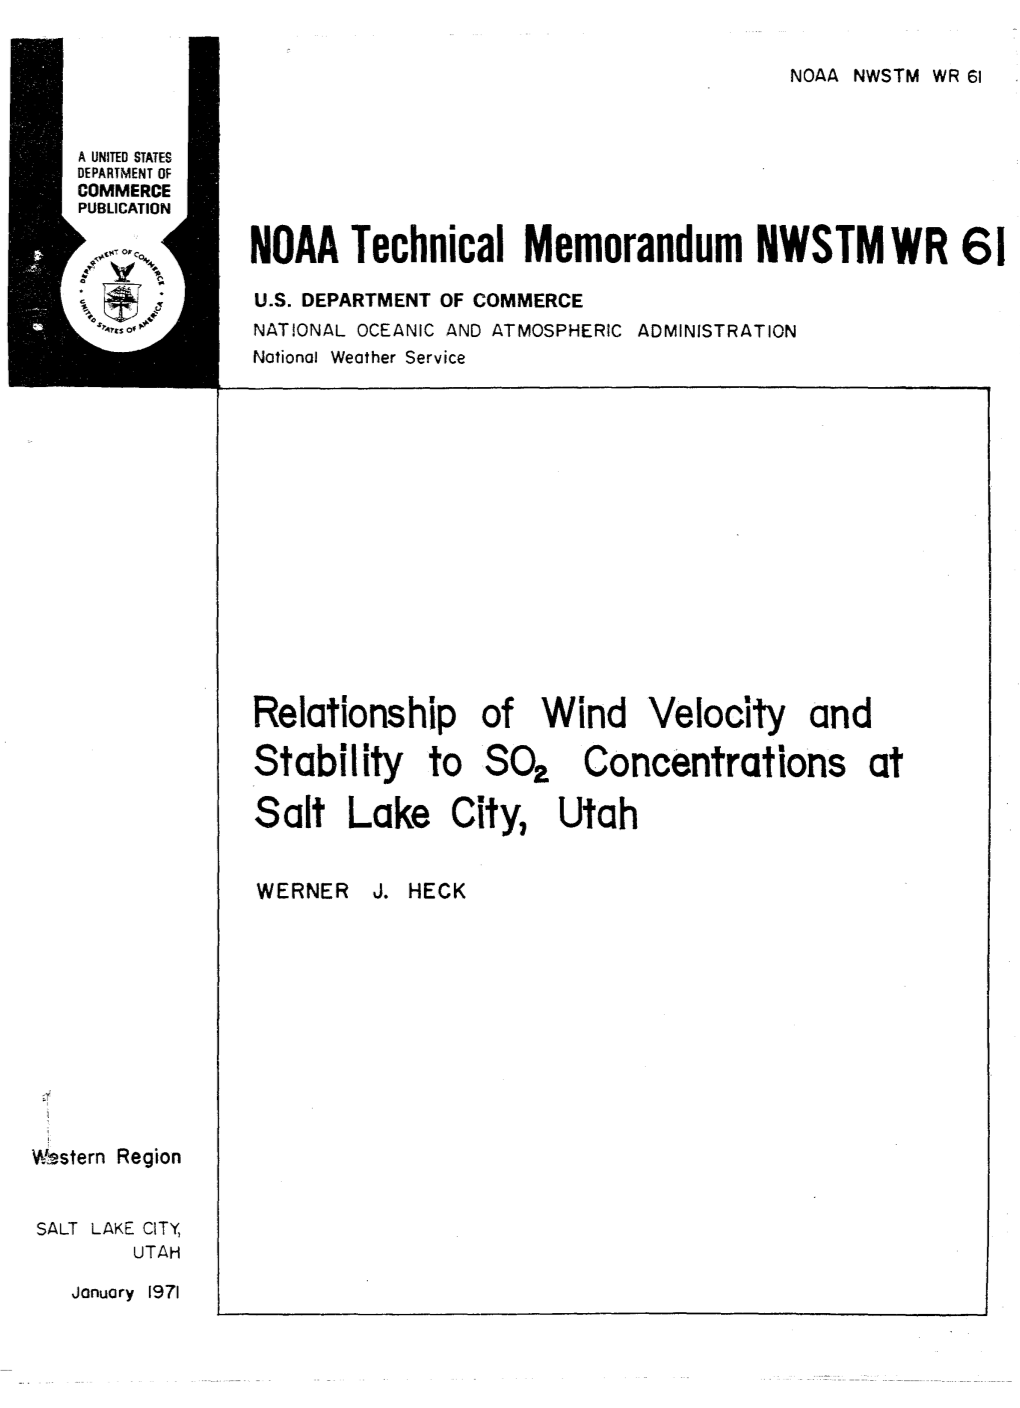 NOAA Technical Memorandum NWSTMWR 61